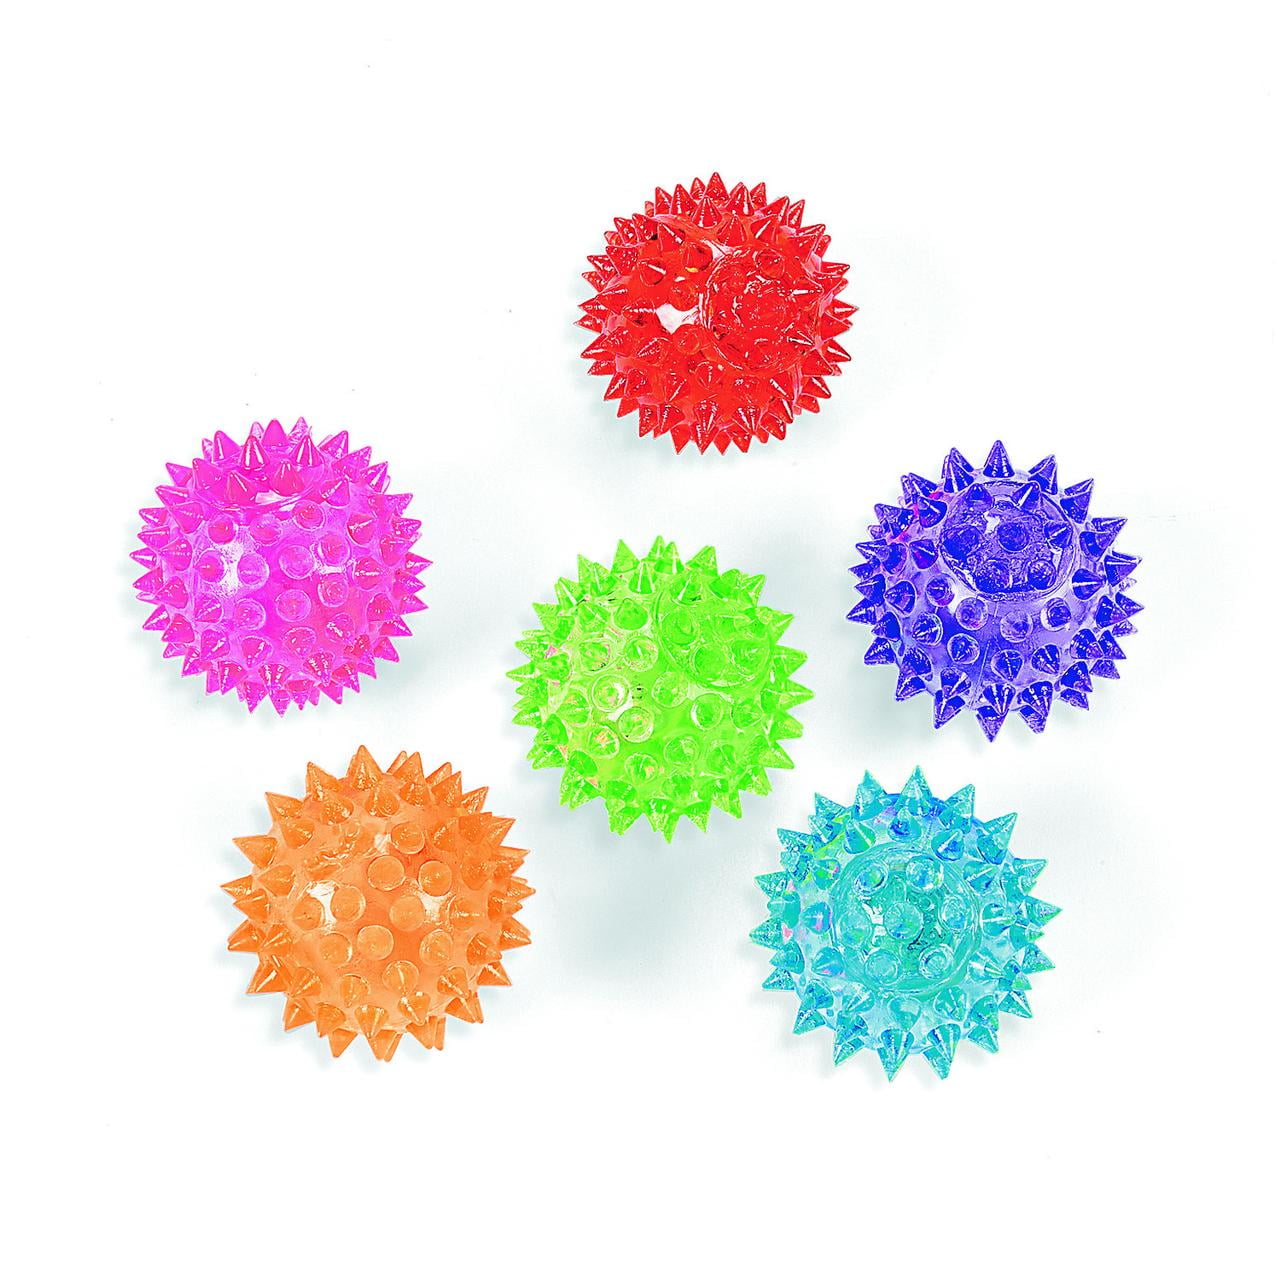 Mini Neon Spike Ball Yo-Yos (2 Dz) - Party Favors, Novelty Toys